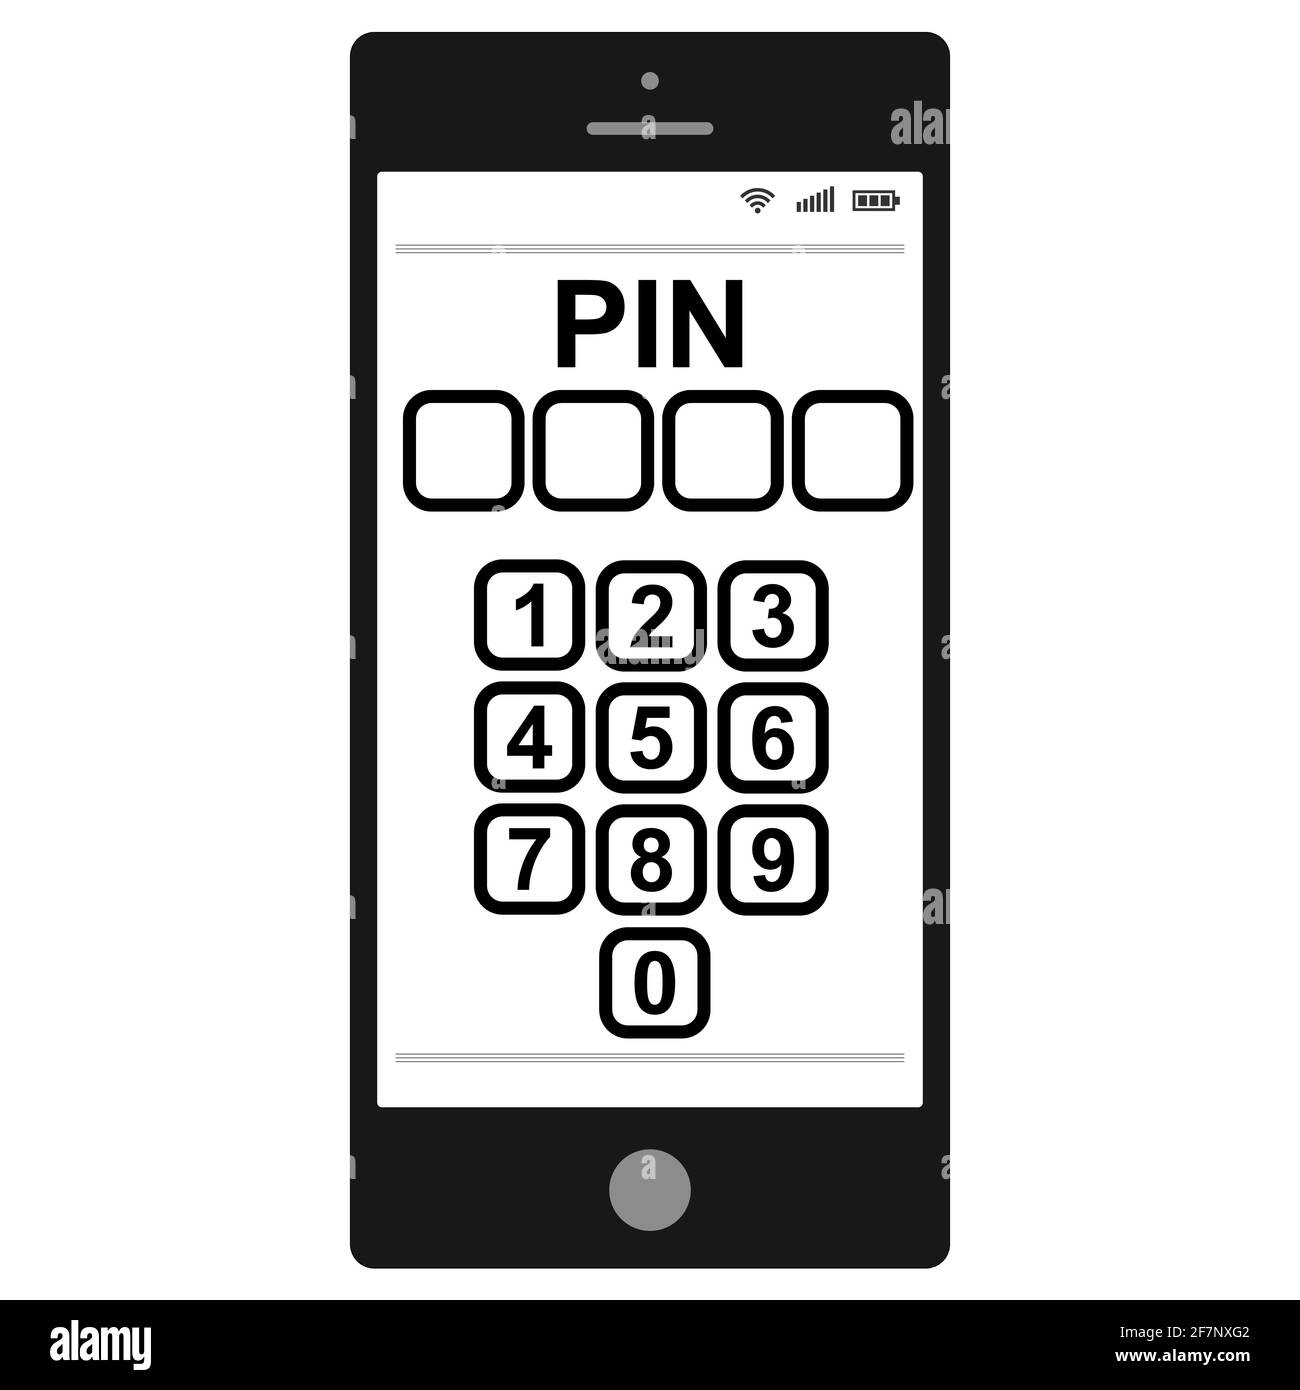 Eingabe eines PIN-Codes auf einem Smartphone, Vektor-PIN-Code persönliche Identifikationsnummer zum Schutz personenbezogener Daten Stock Vektor